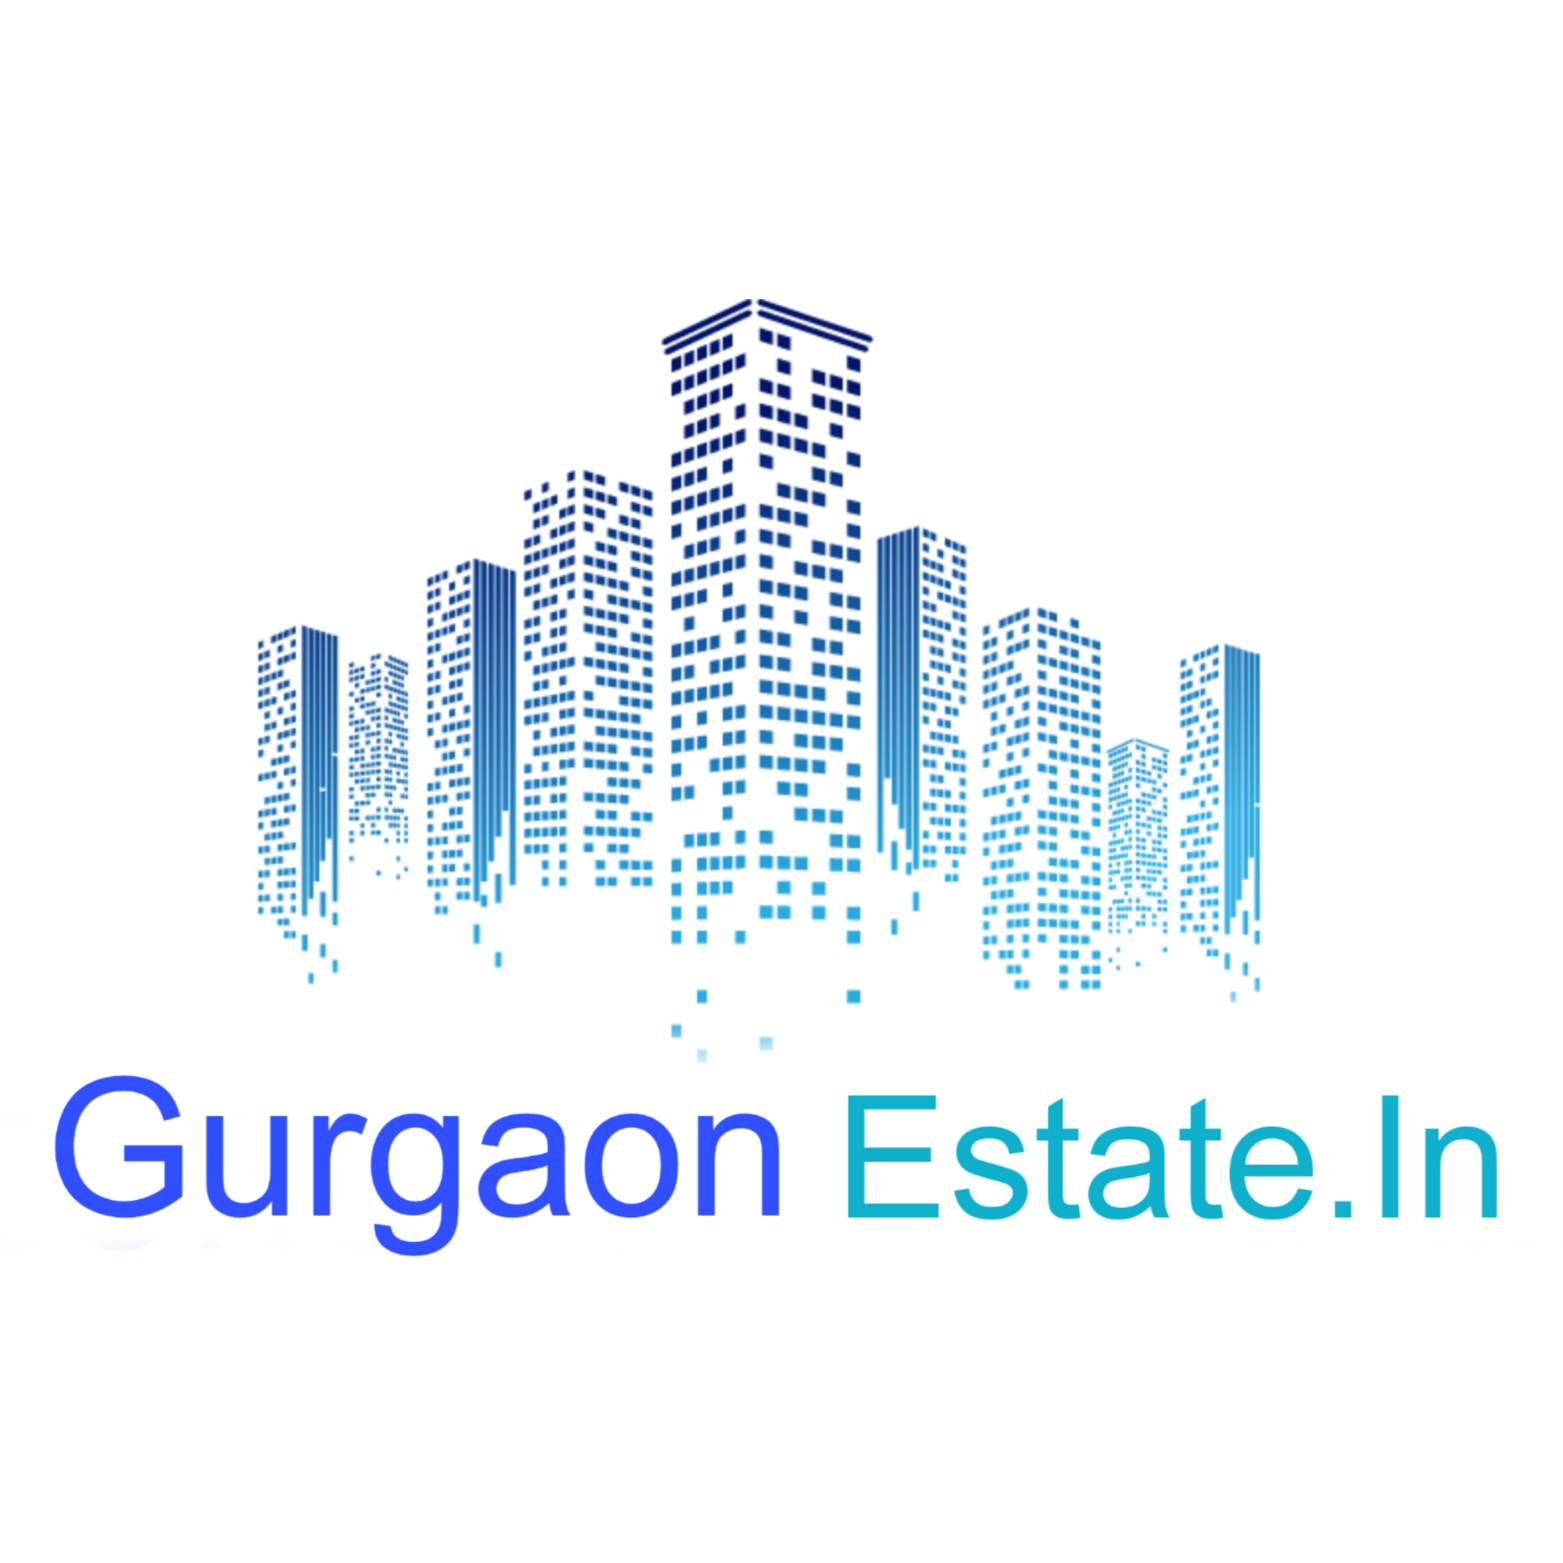 Gurgaon Estate.In